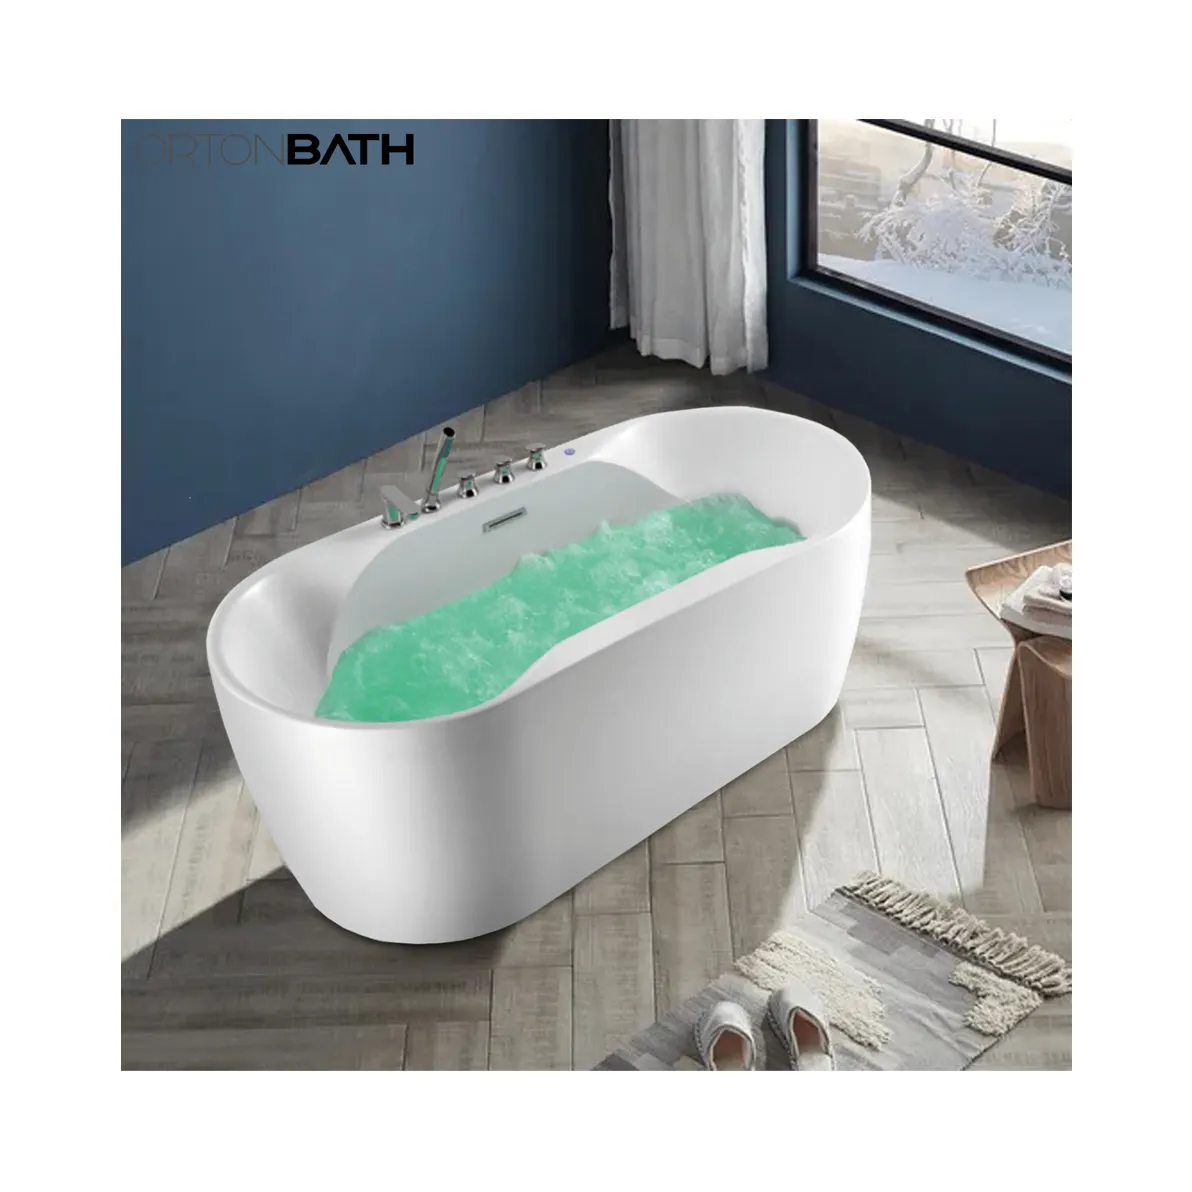 ORTONBATH-bañera de hidromasaje independiente de acrílico para adultos, ahorro de agua, artículos sanitarios de plástico